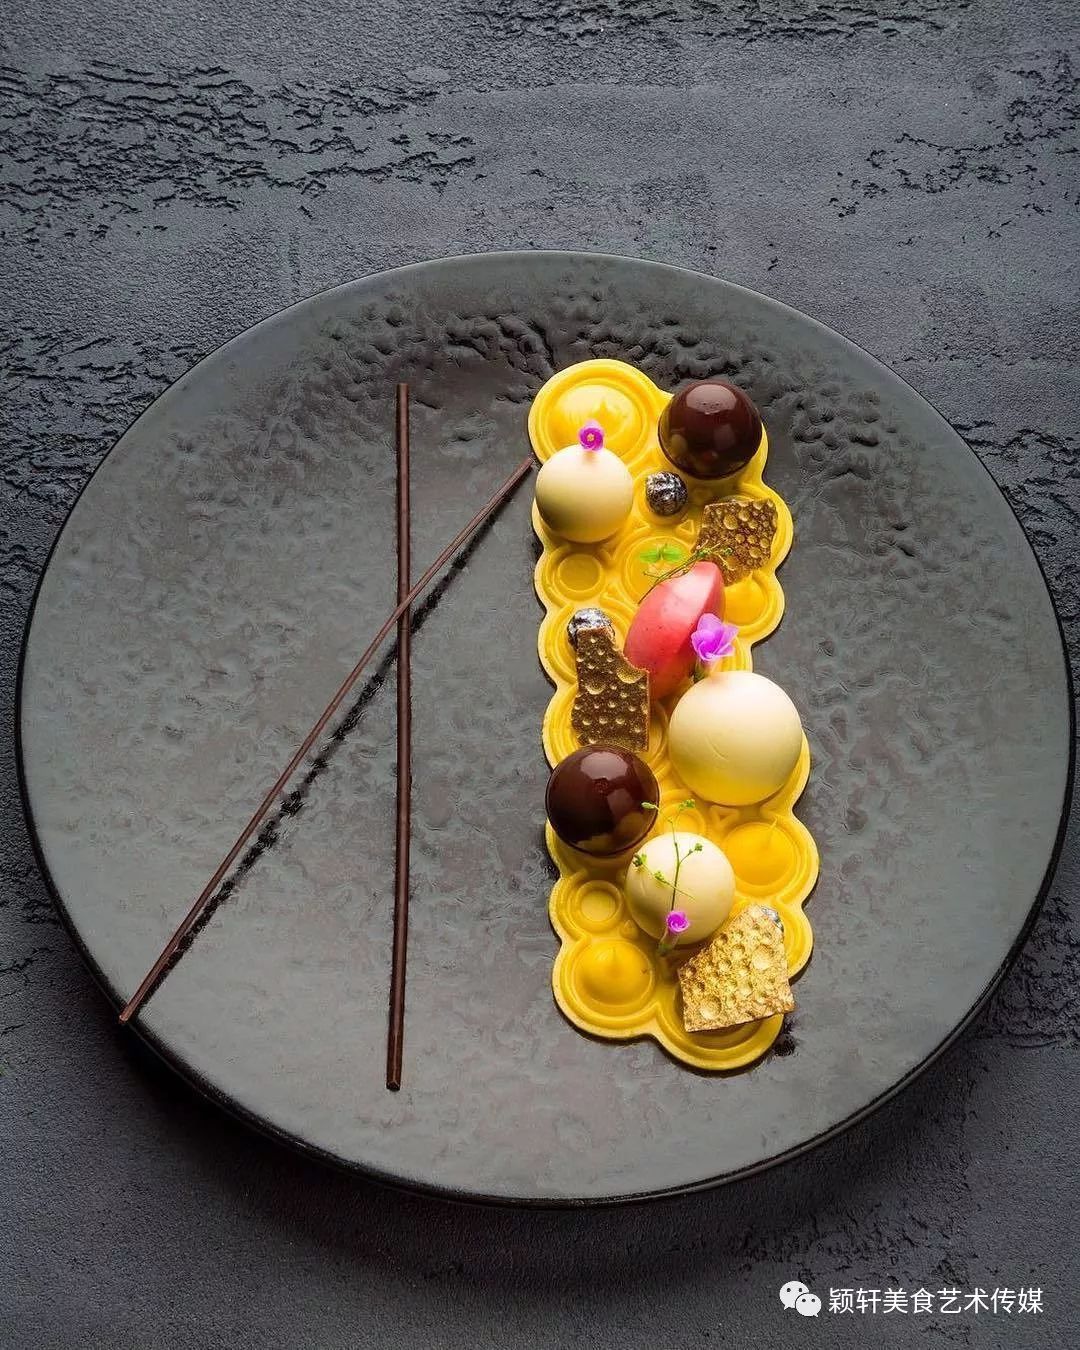 米其林餐厅里chef的摆盘艺术与餐具搭配